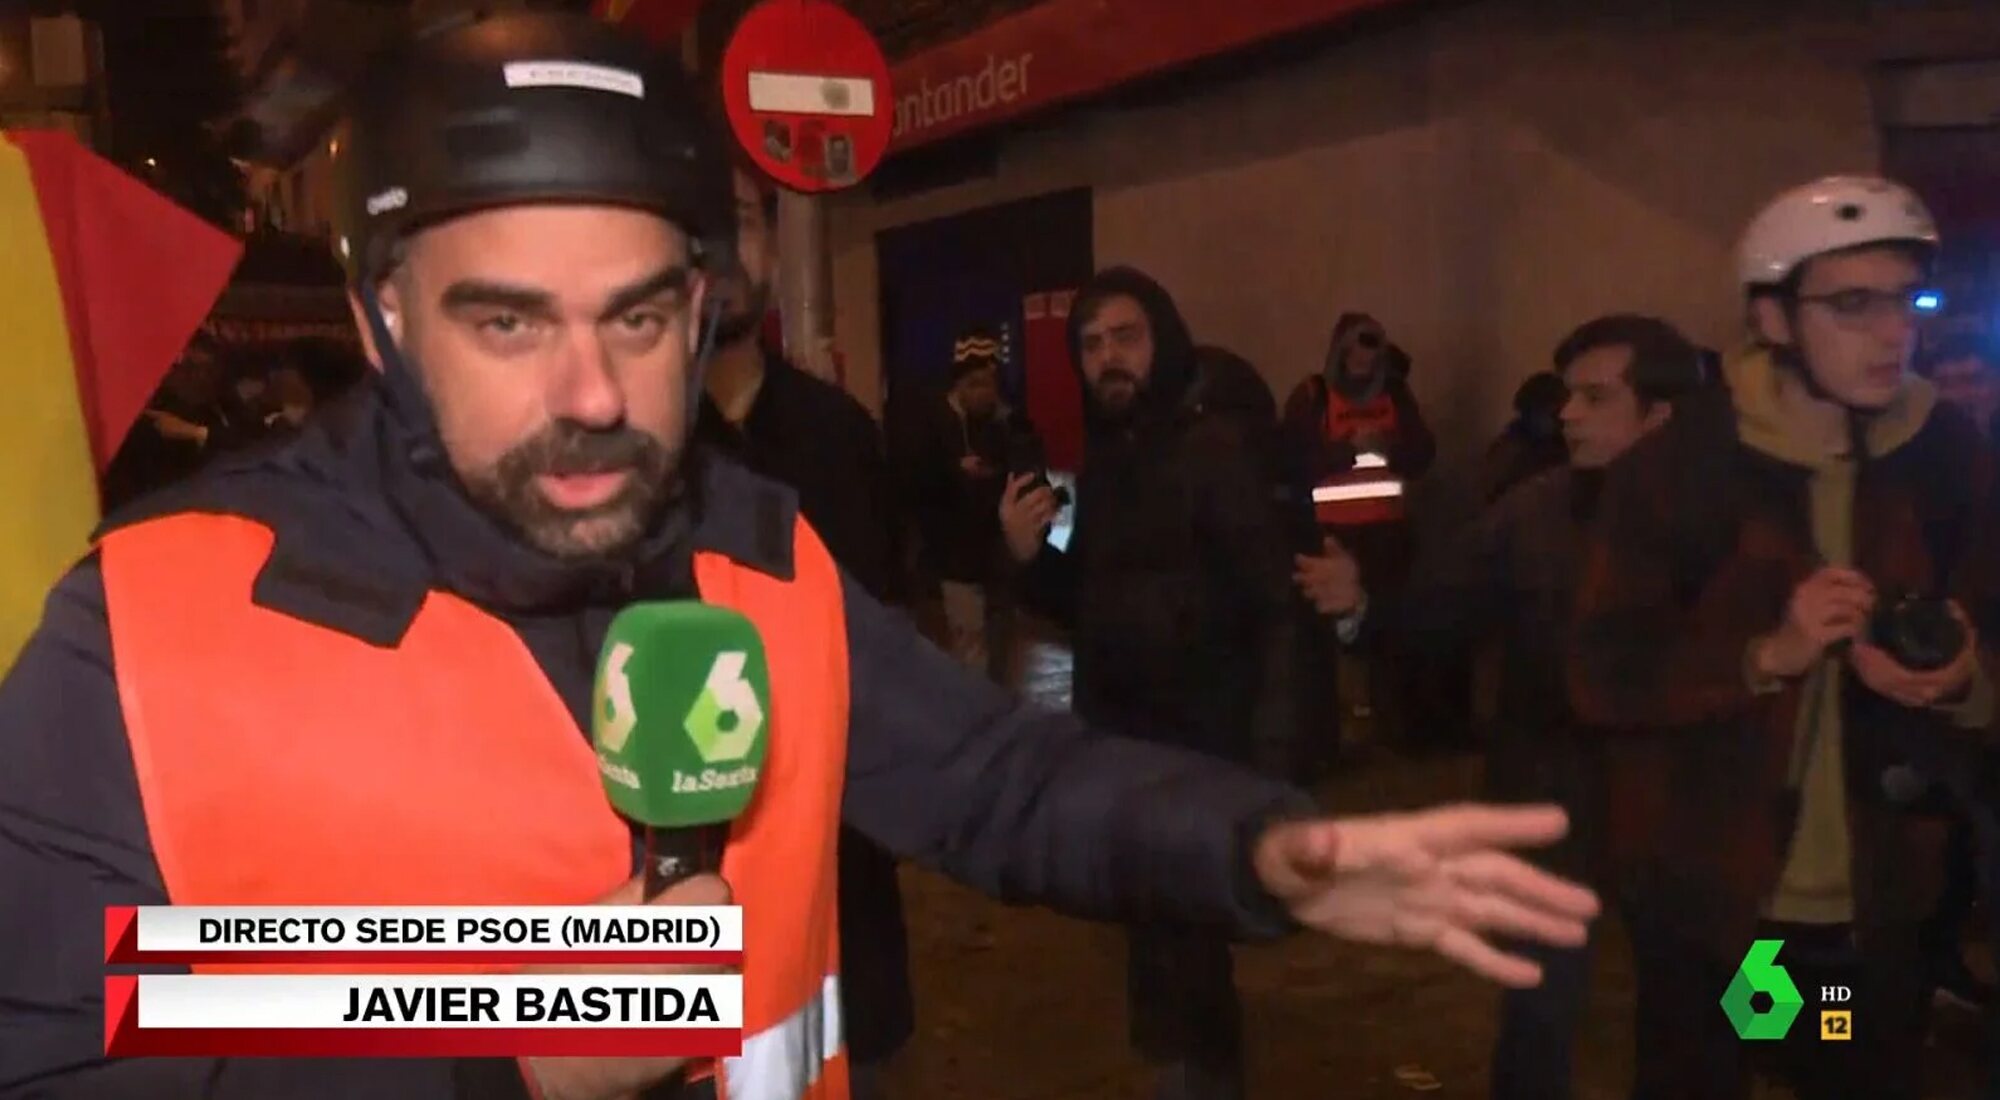 El periodista Javier Bastida es increpado en directo en 'El intermedio' en los alrededores de Ferraz